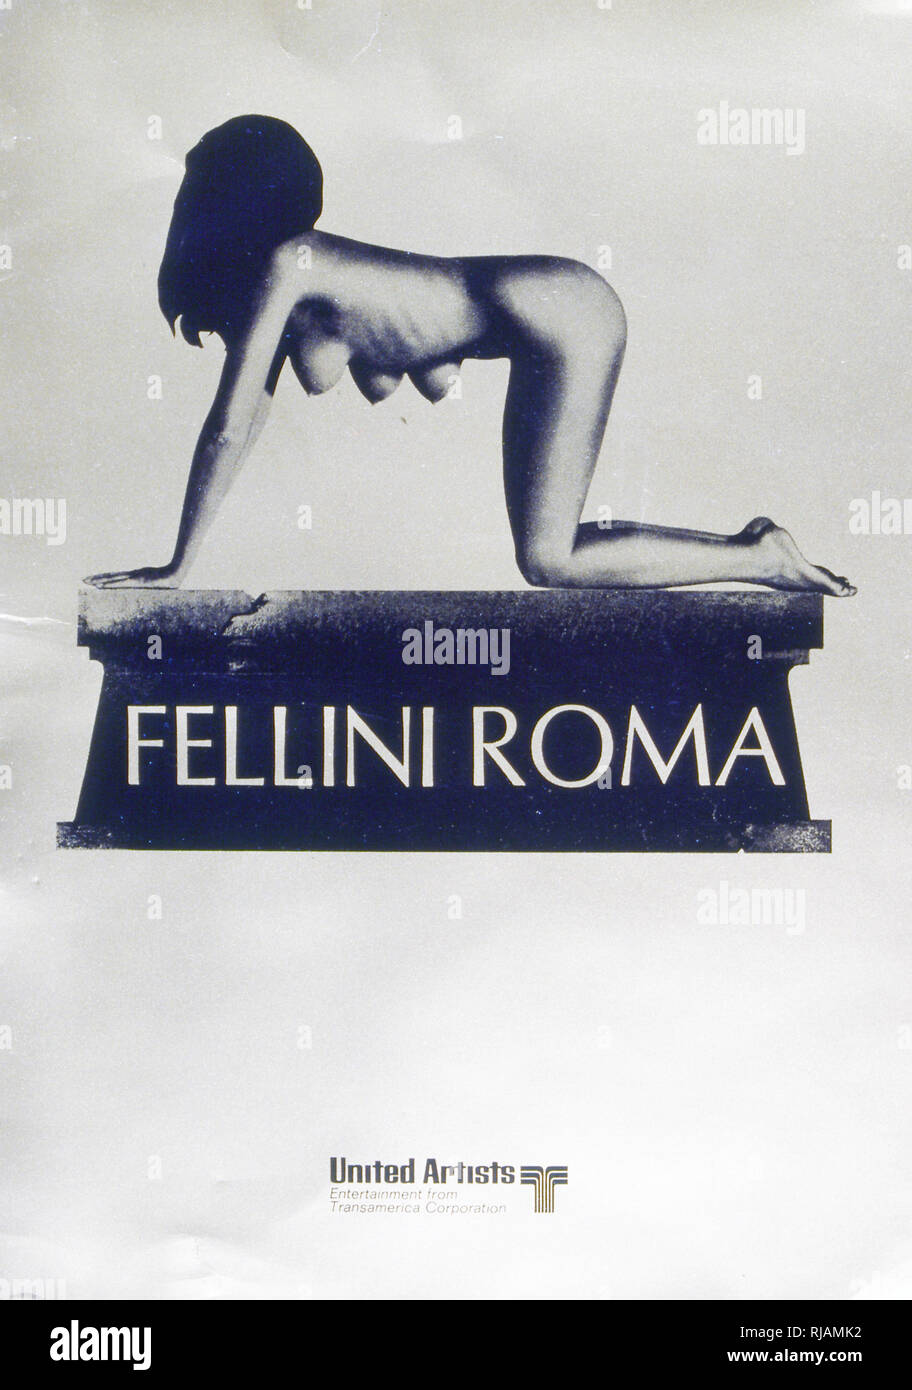 1972 Film Posta für "Roma" von Fellini. Ein semi-autobiographische, poetische Komödie - Drama Film, Regisseur Federico Fellini's aus seiner Heimatstadt Rimini nach Rom als Jugend. Es ist eine Hommage an die Stadt, dargestellt in einer Reihe von lose verbundenen Episoden während der beiden Rom von Vergangenheit und Gegenwart. Federico Fellini (1920 - 1993) war ein italienischer Filmregisseur und Drehbuchautor. Stockfoto